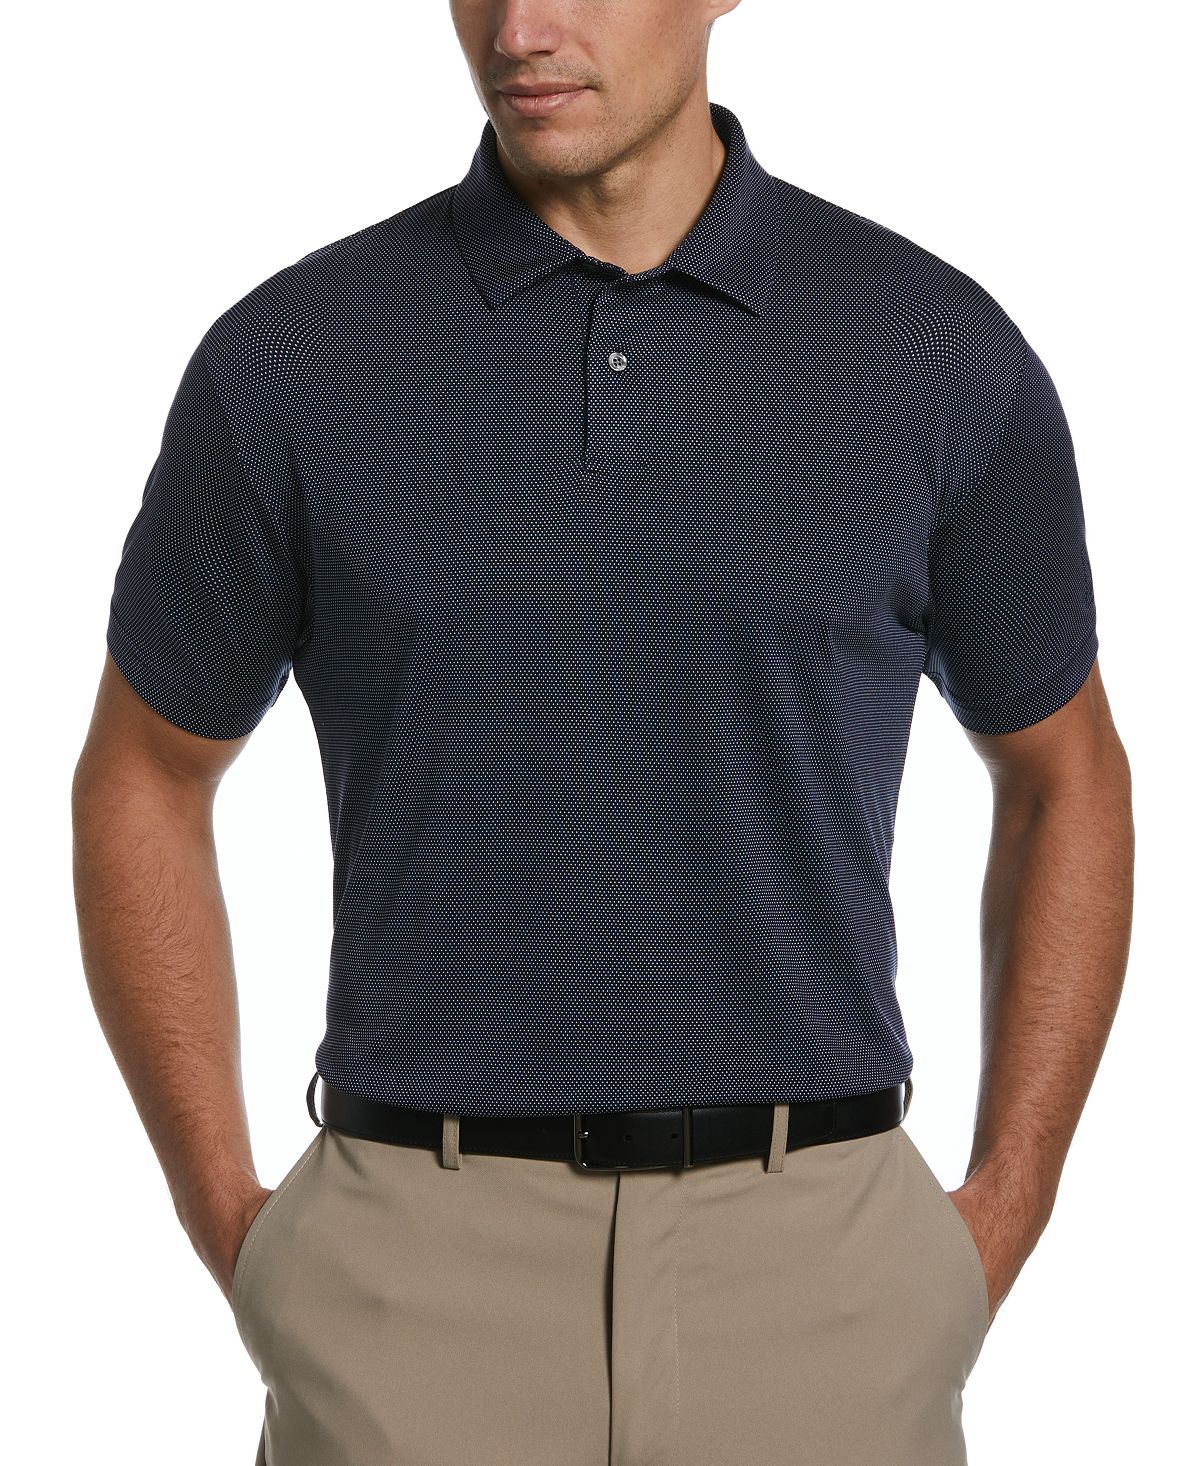 Мужская рубашка-поло с короткими рукавами и фактурной текстурой «птичий глаз» PGA TOUR мячи для гольфа nxt tour s 50 шт качество aaa идеальное сочетание мячей для гольфа tour nxt tour для каждого игрока в гольф